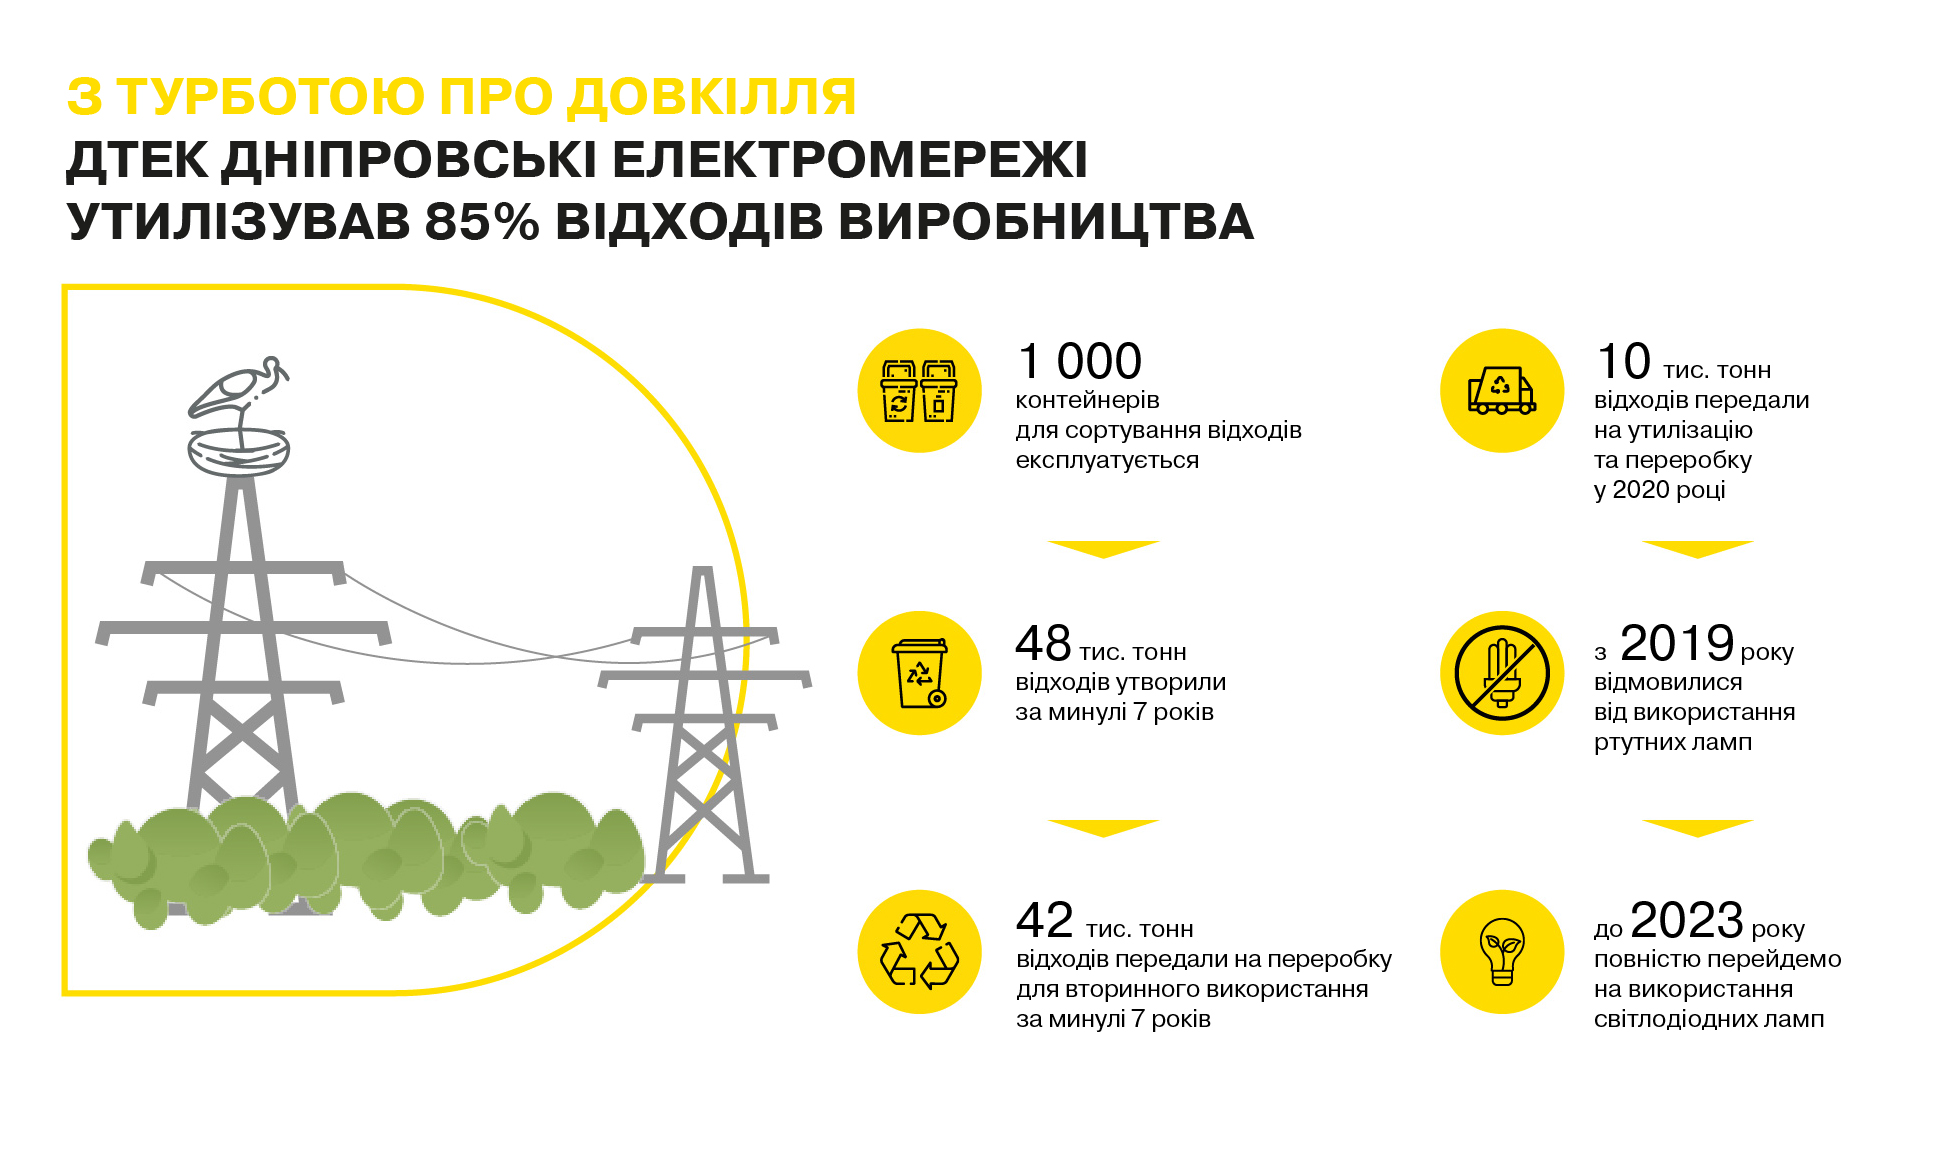 С заботой об окружающей среде: ДТЭК Днепровские электросети передал на утилизацию и вторичное использование более 42 тысяч тонн отходов